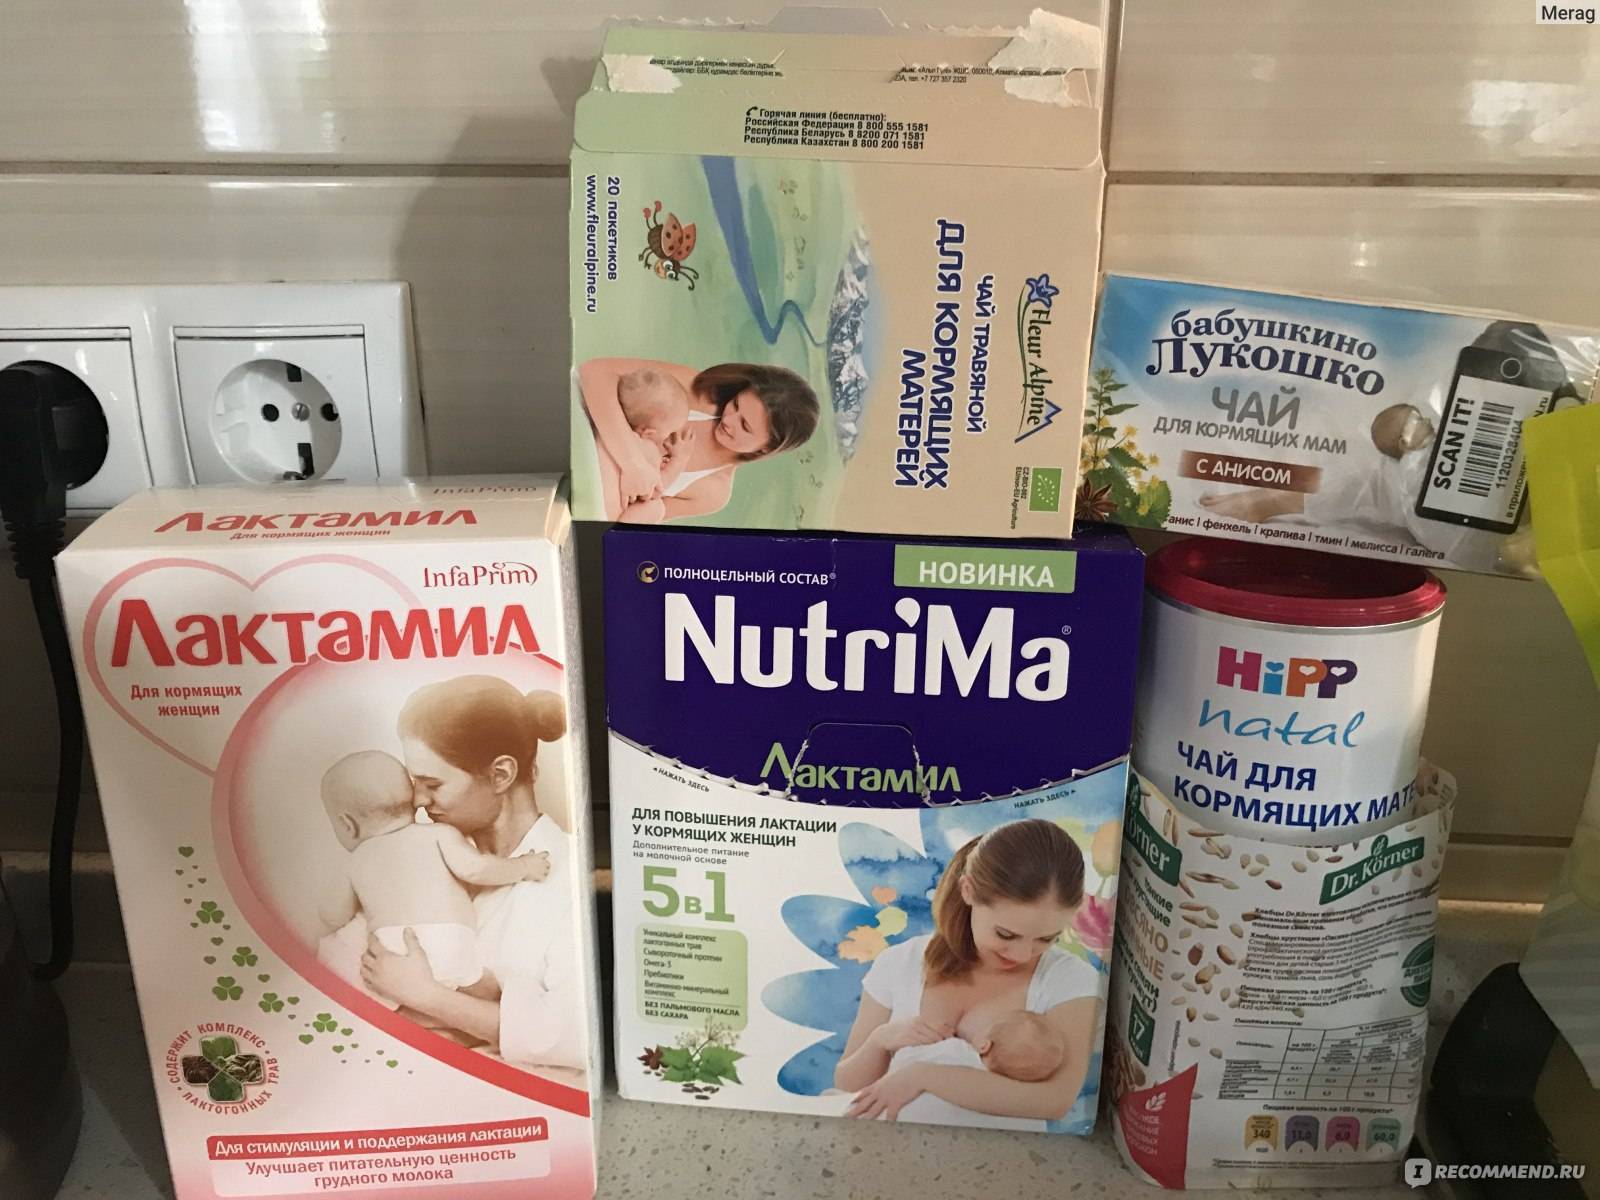 Продукты для увеличения лактации + 5 рецептов коктейлей для повышения лактации - самый лучший сайт для мам о малышах!